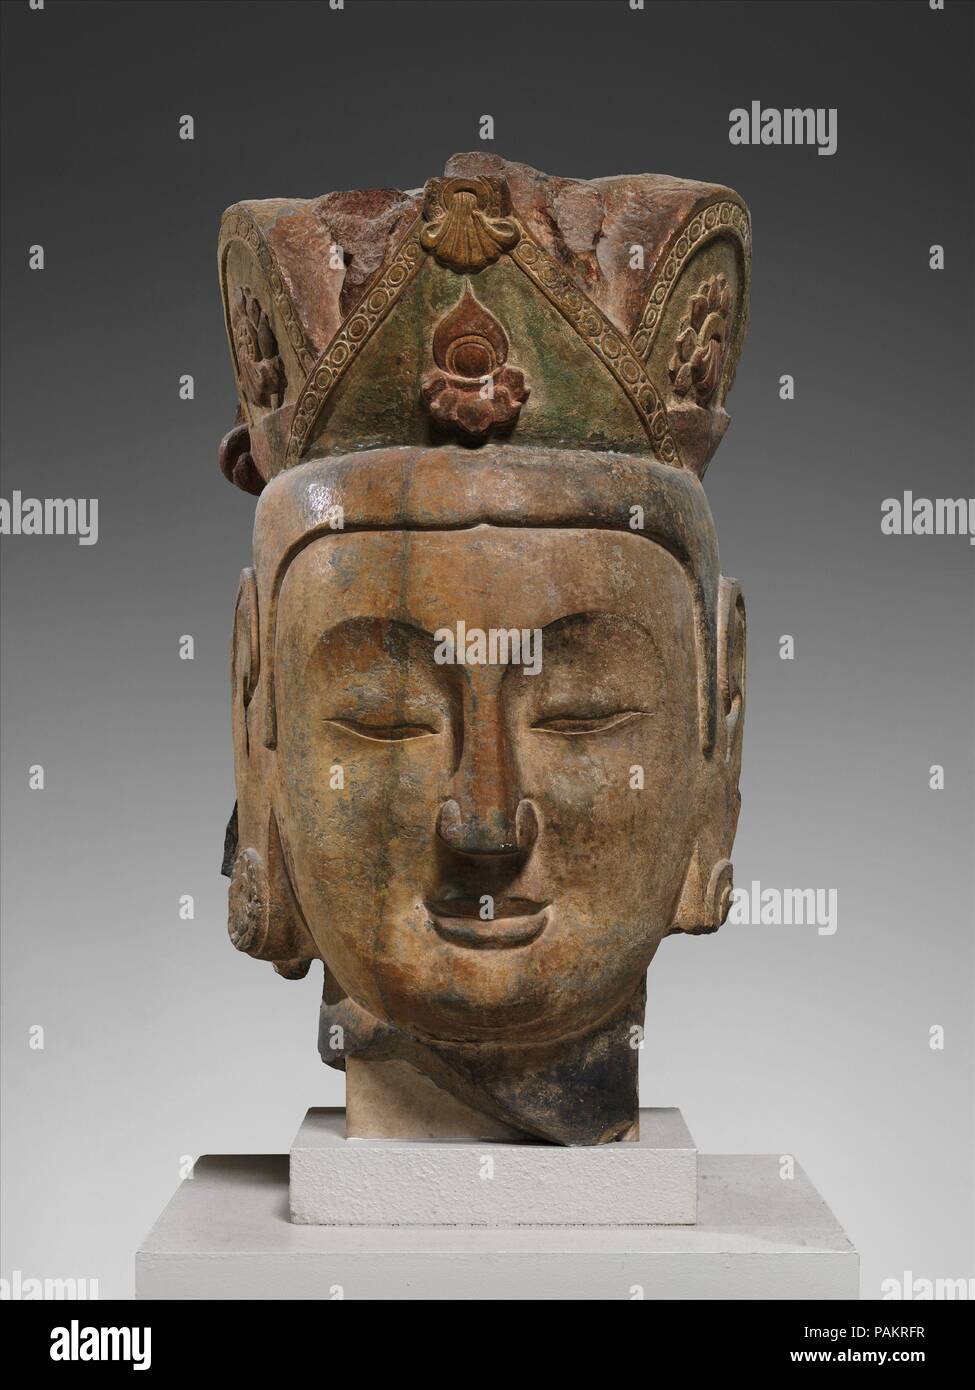 Chef d'un Accompagnateur Bodhisattva. Culture : la Chine. Dimensions : H. 32 in. (81,3 cm) ; W. 17 1/2 in. (44,5 cm) ; environ 12 D. dans. (30,5 cm). Date : ca. 565-75. Cette tête appartenait à un imposant bodhisattva qui a présidé à l'entrée de la grotte centrale au nord de Xiangtangshan. Ce site, qui se compose de seulement trois temples de caverne avec des sculptures figuratives colossale, a été une fois stratégiquement situé sur la route entre la capitale à Ye et Jinyang, dans la province de Shanxi. Au début de la période, il peut qi ont été un lieu de méditation ou autres activités Bouddhistes. Musée : Metr Banque D'Images